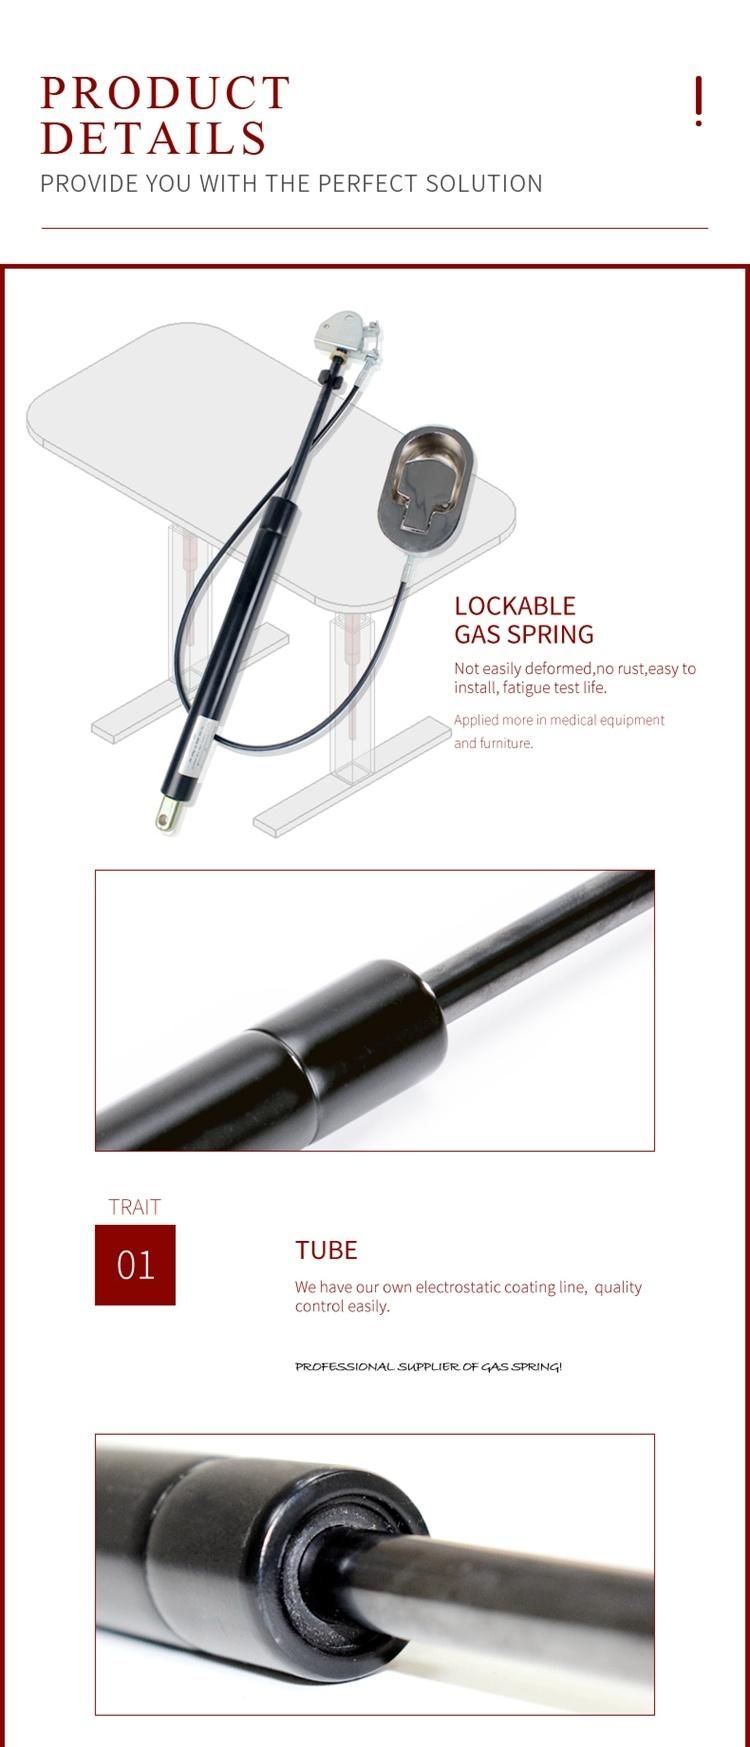 Adjustable Lockable Gas Spring in Handware